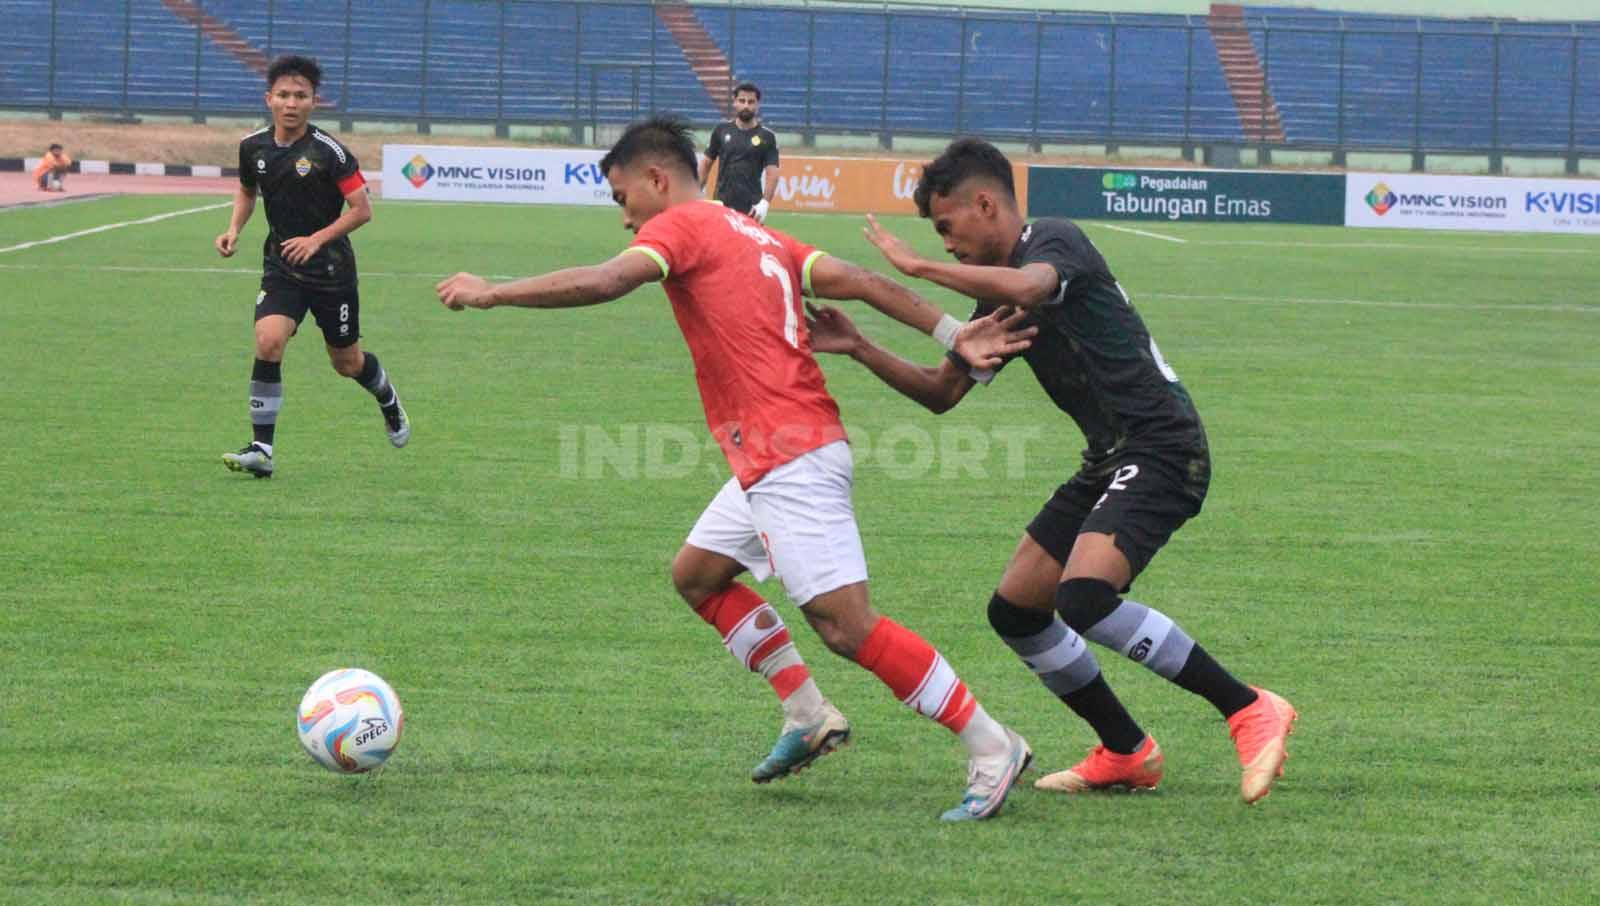 Bek PSKC Cimahi, Oska Lestaluhu, mengawal ketat pemain FC Bekasi City. Foto: Arif Rahman/INDOSPORT.